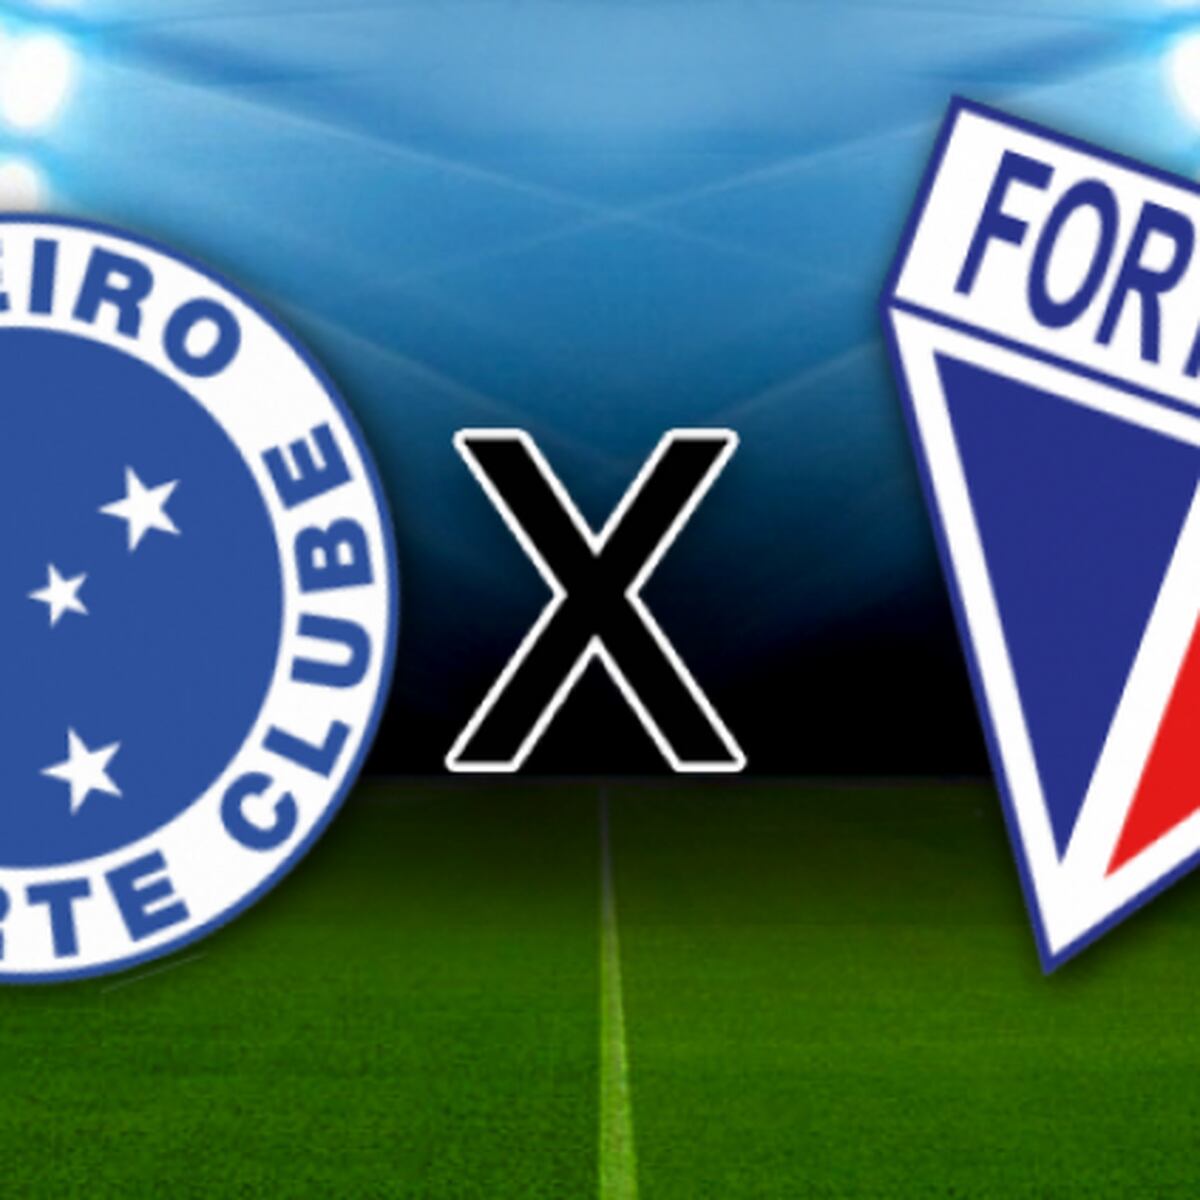 Fortaleza x Cruzeiro: onde assistir ao vivo na TV e online, que horas é,  escalação e mais do Campeonato Brasileiro